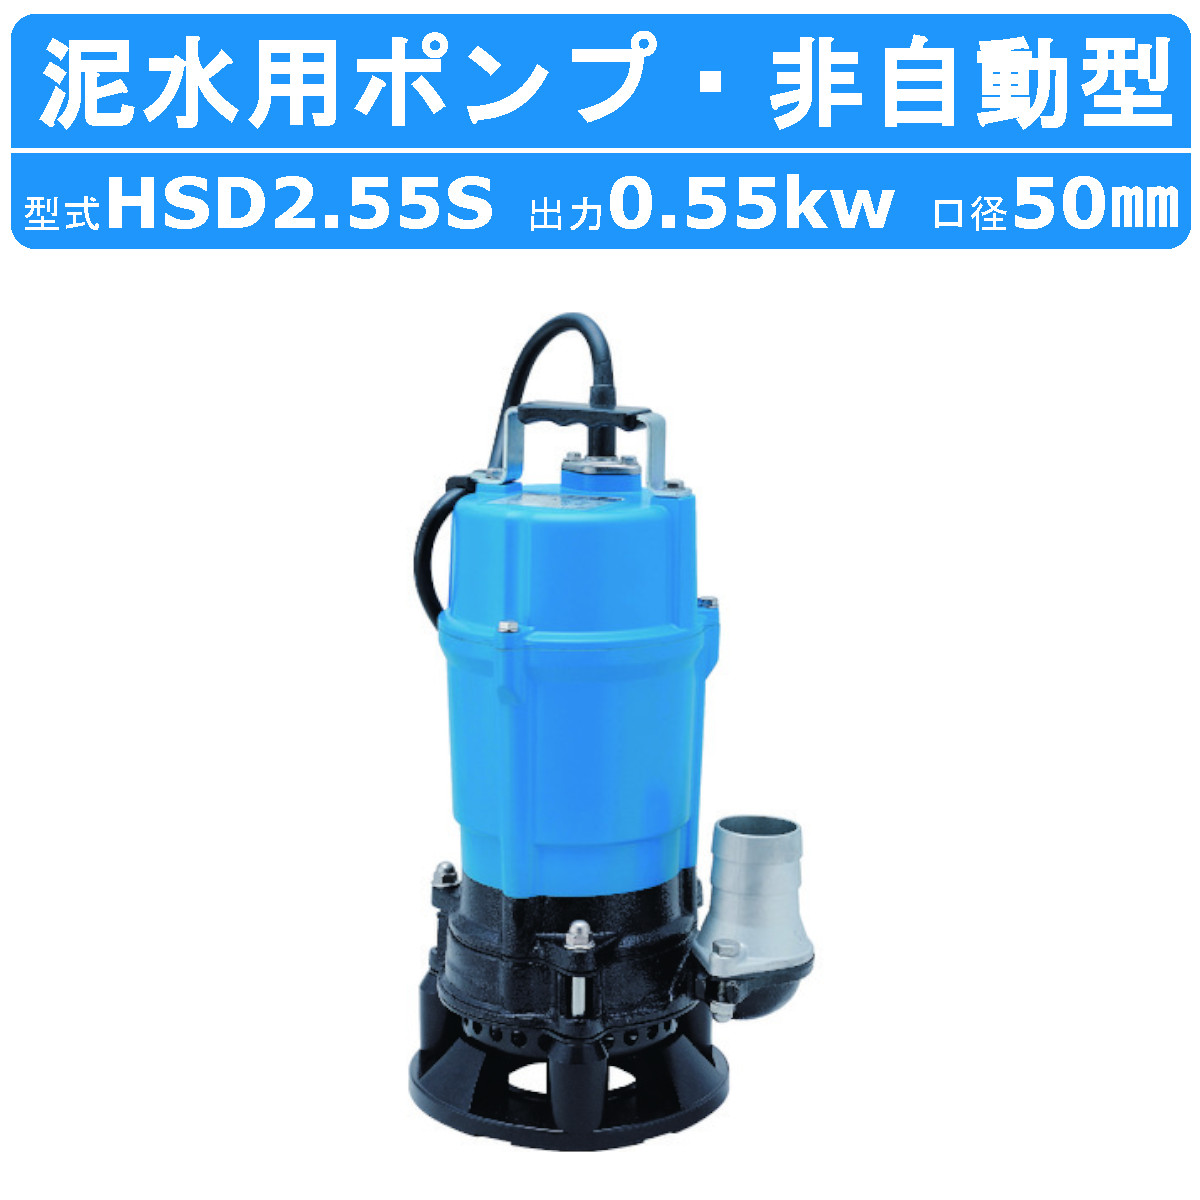 ツルミ 泥水用 水中ポンプ HSD2.55S 100V 2吋/50mm 50Hz/60Hz サンド 